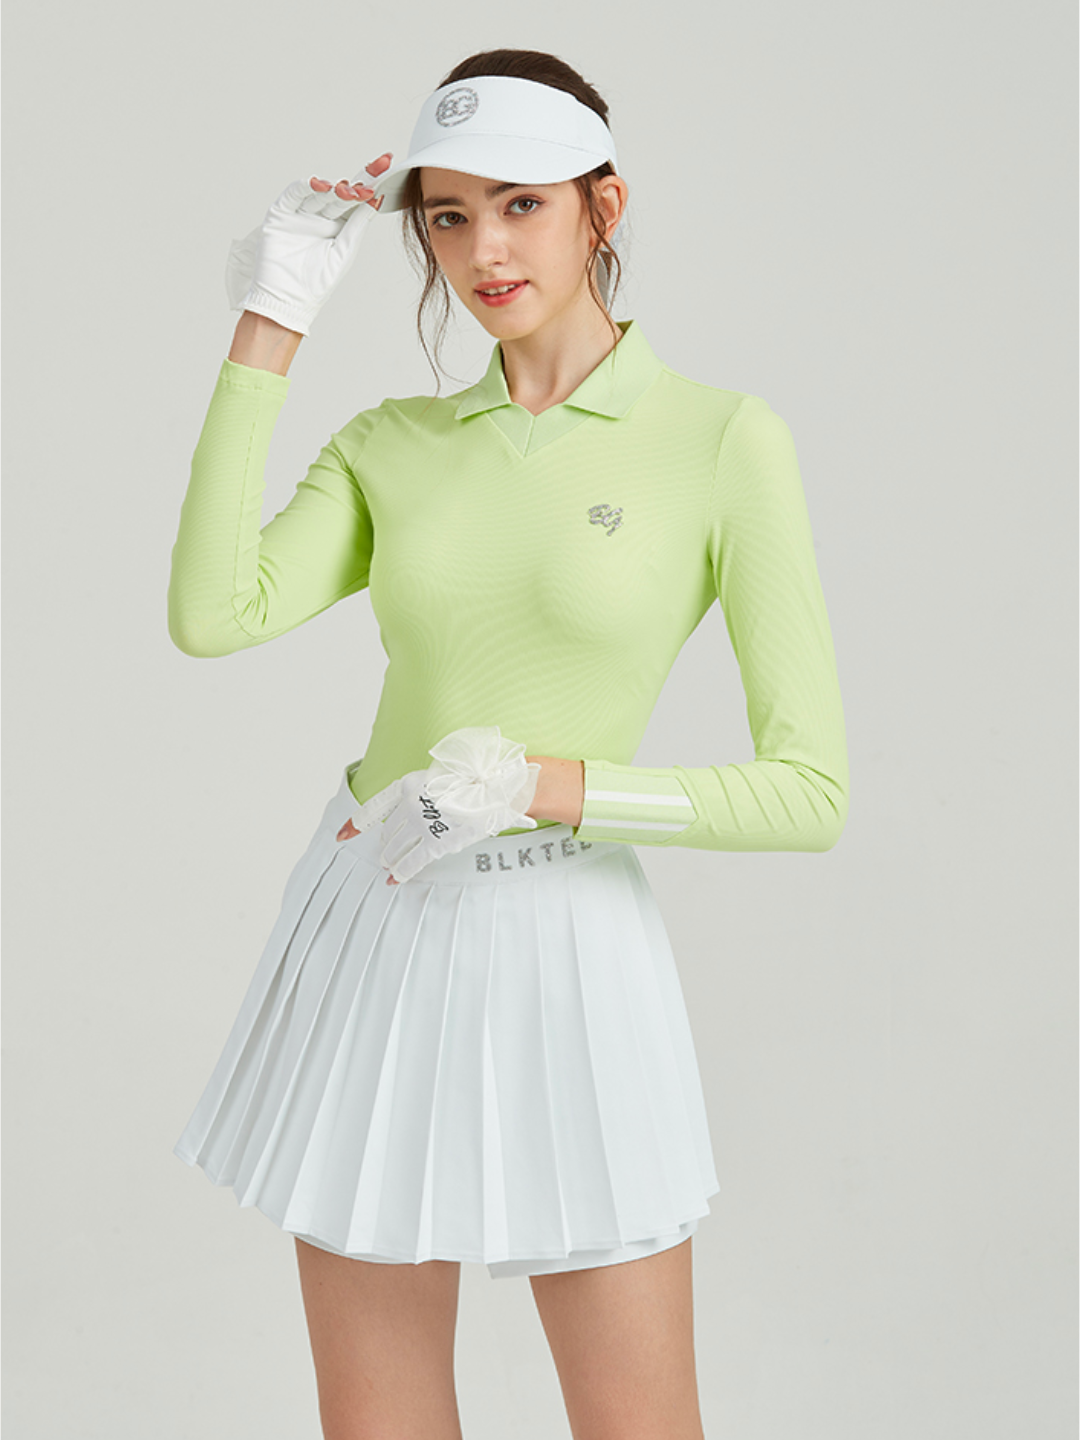 Pakaian golf ketat kelas atas ch011